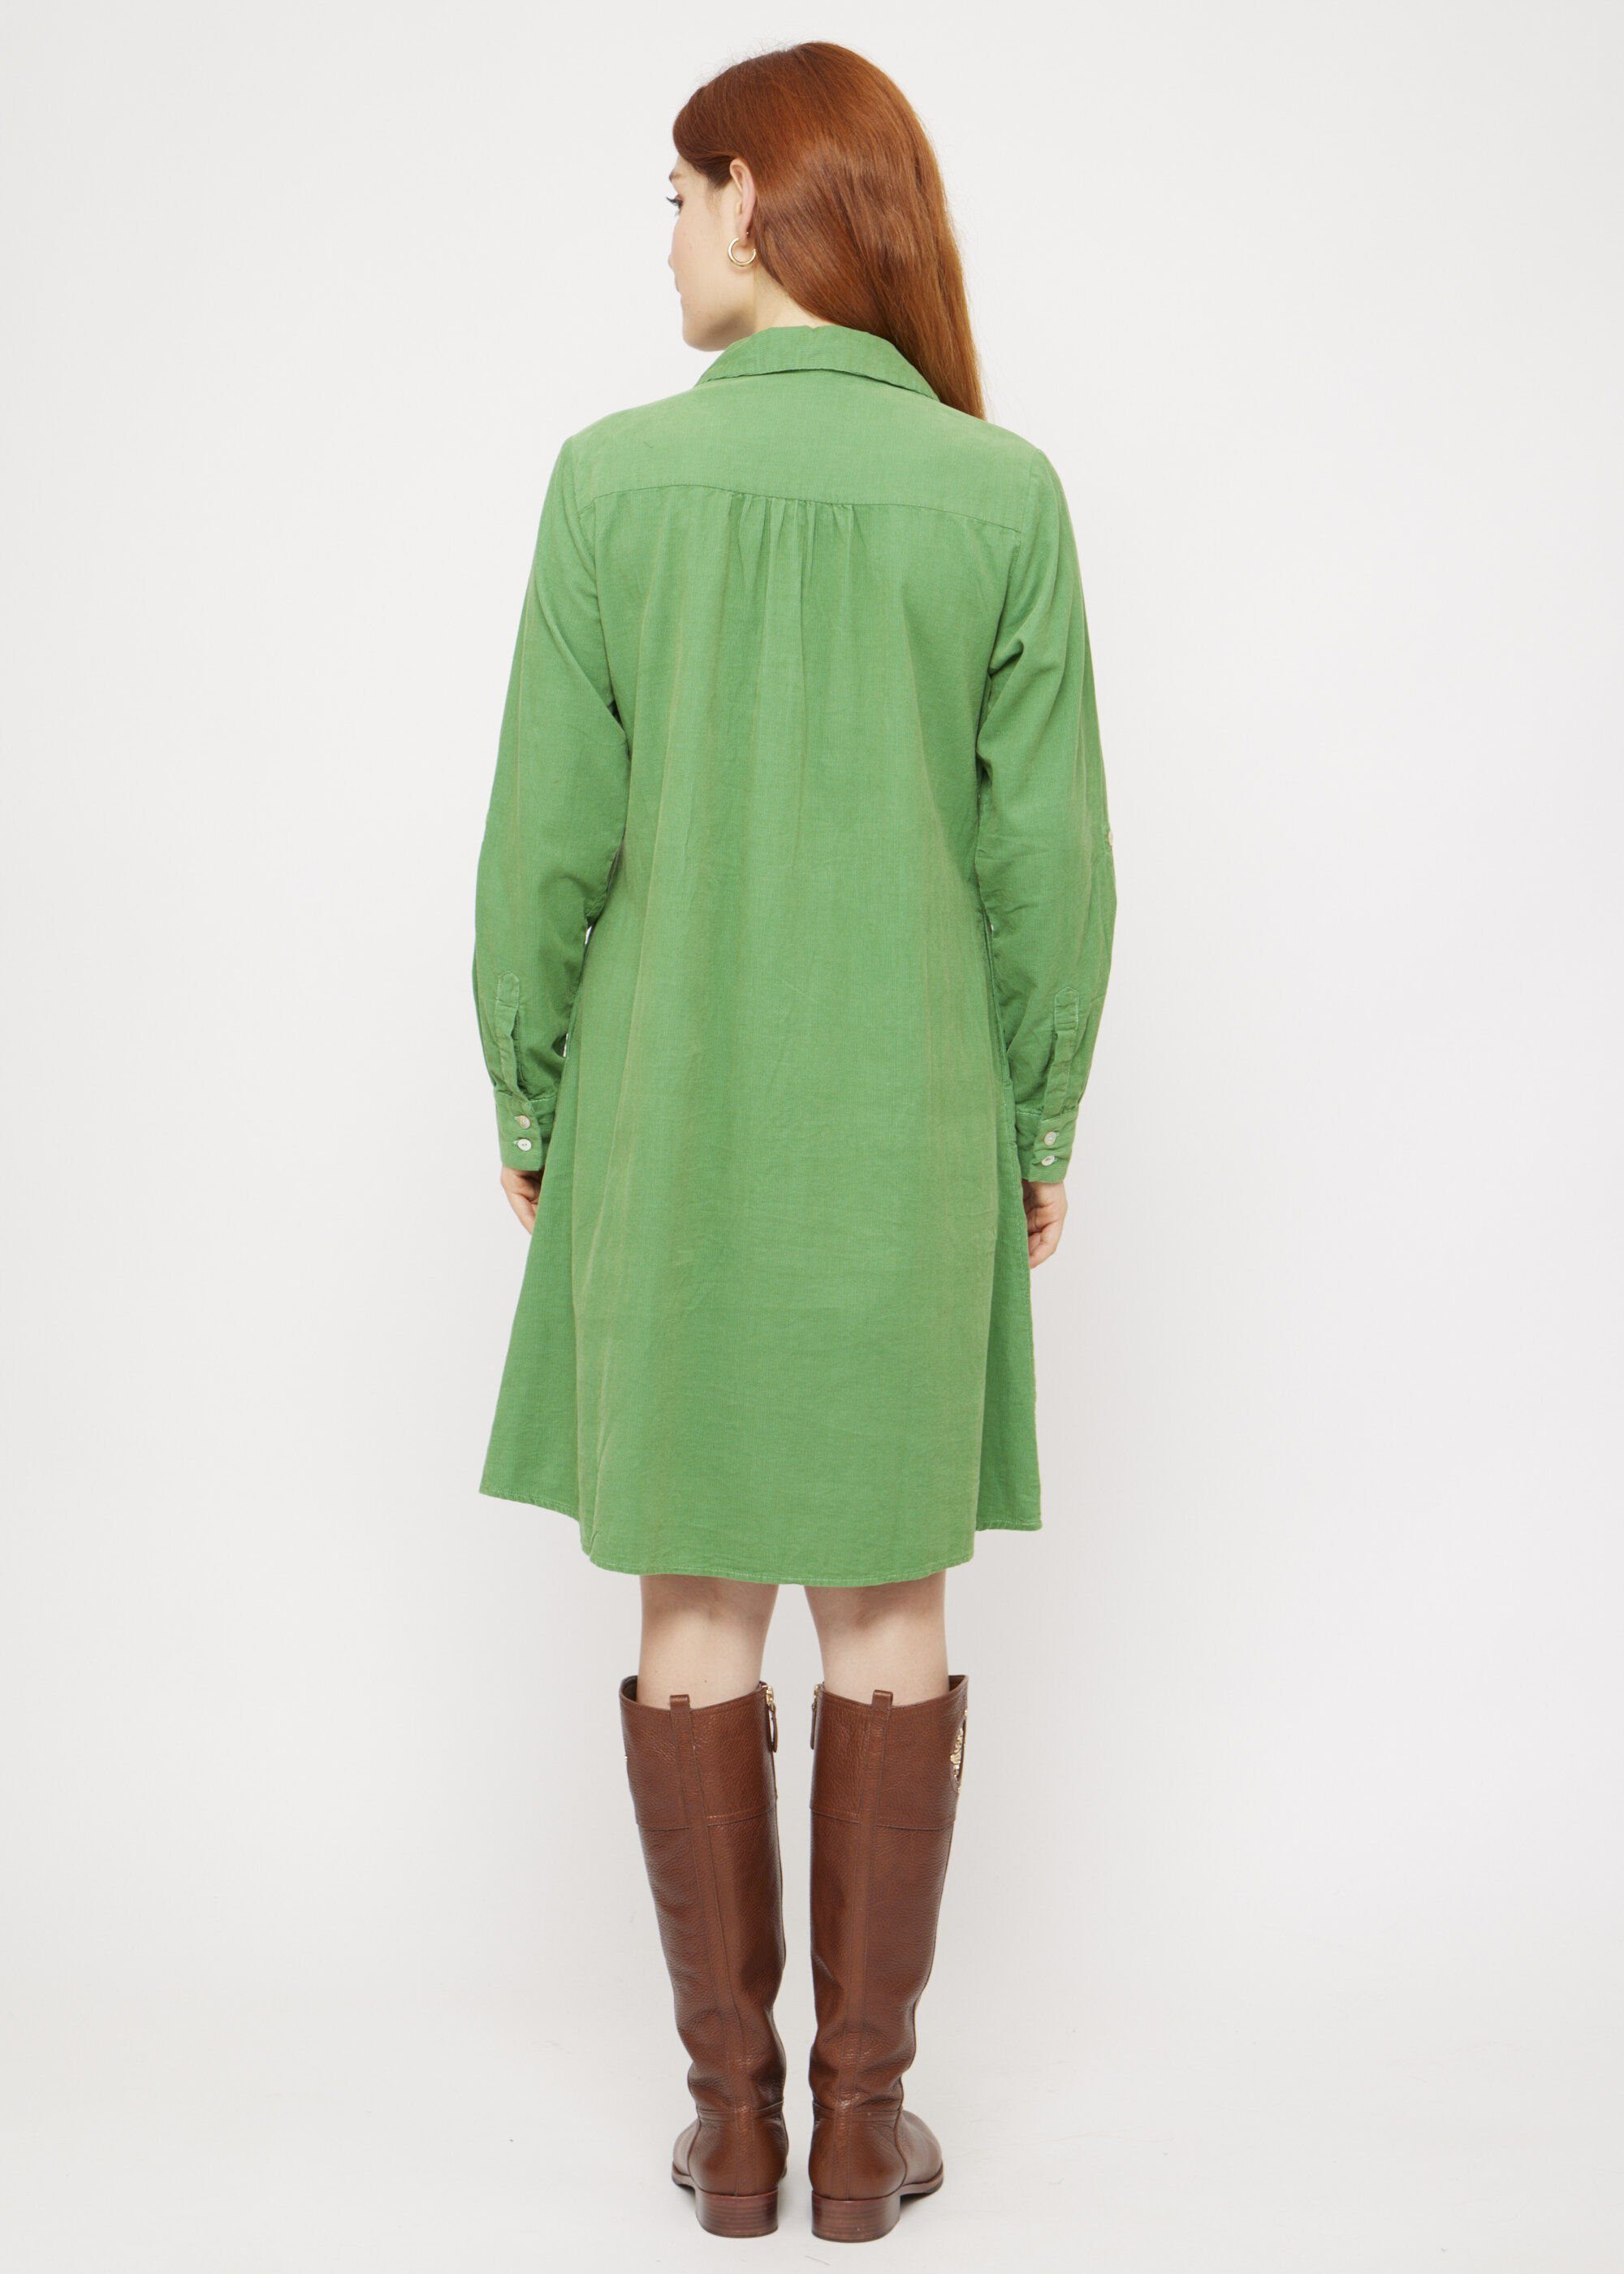 VICCI Germany A-Linien-Kleid aus angenehm Cord weichem Grün